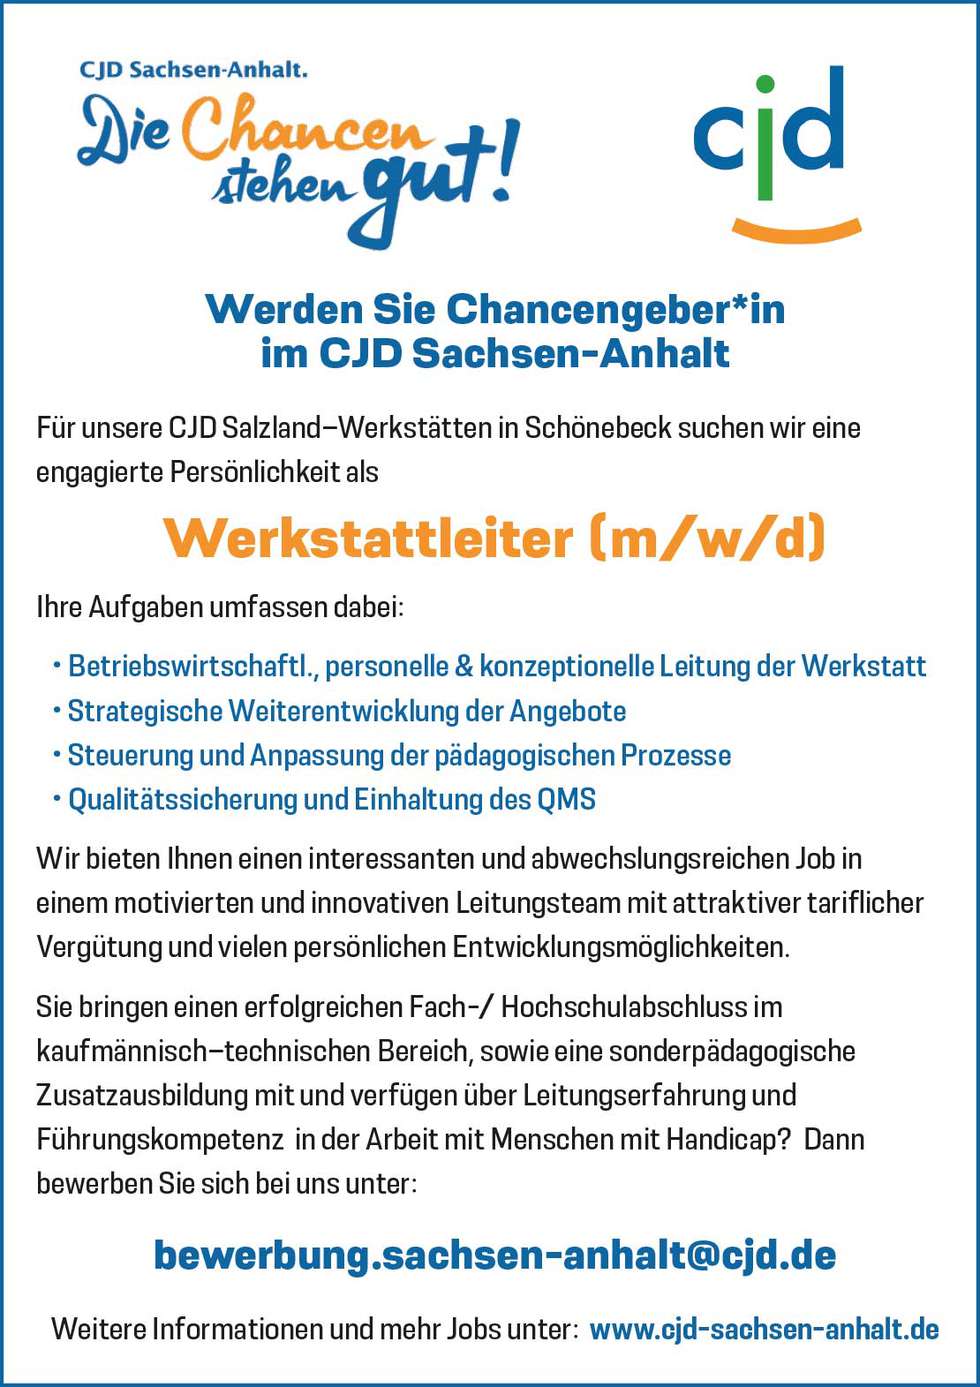 CJD Sachsen-Anhalt Chancengeber